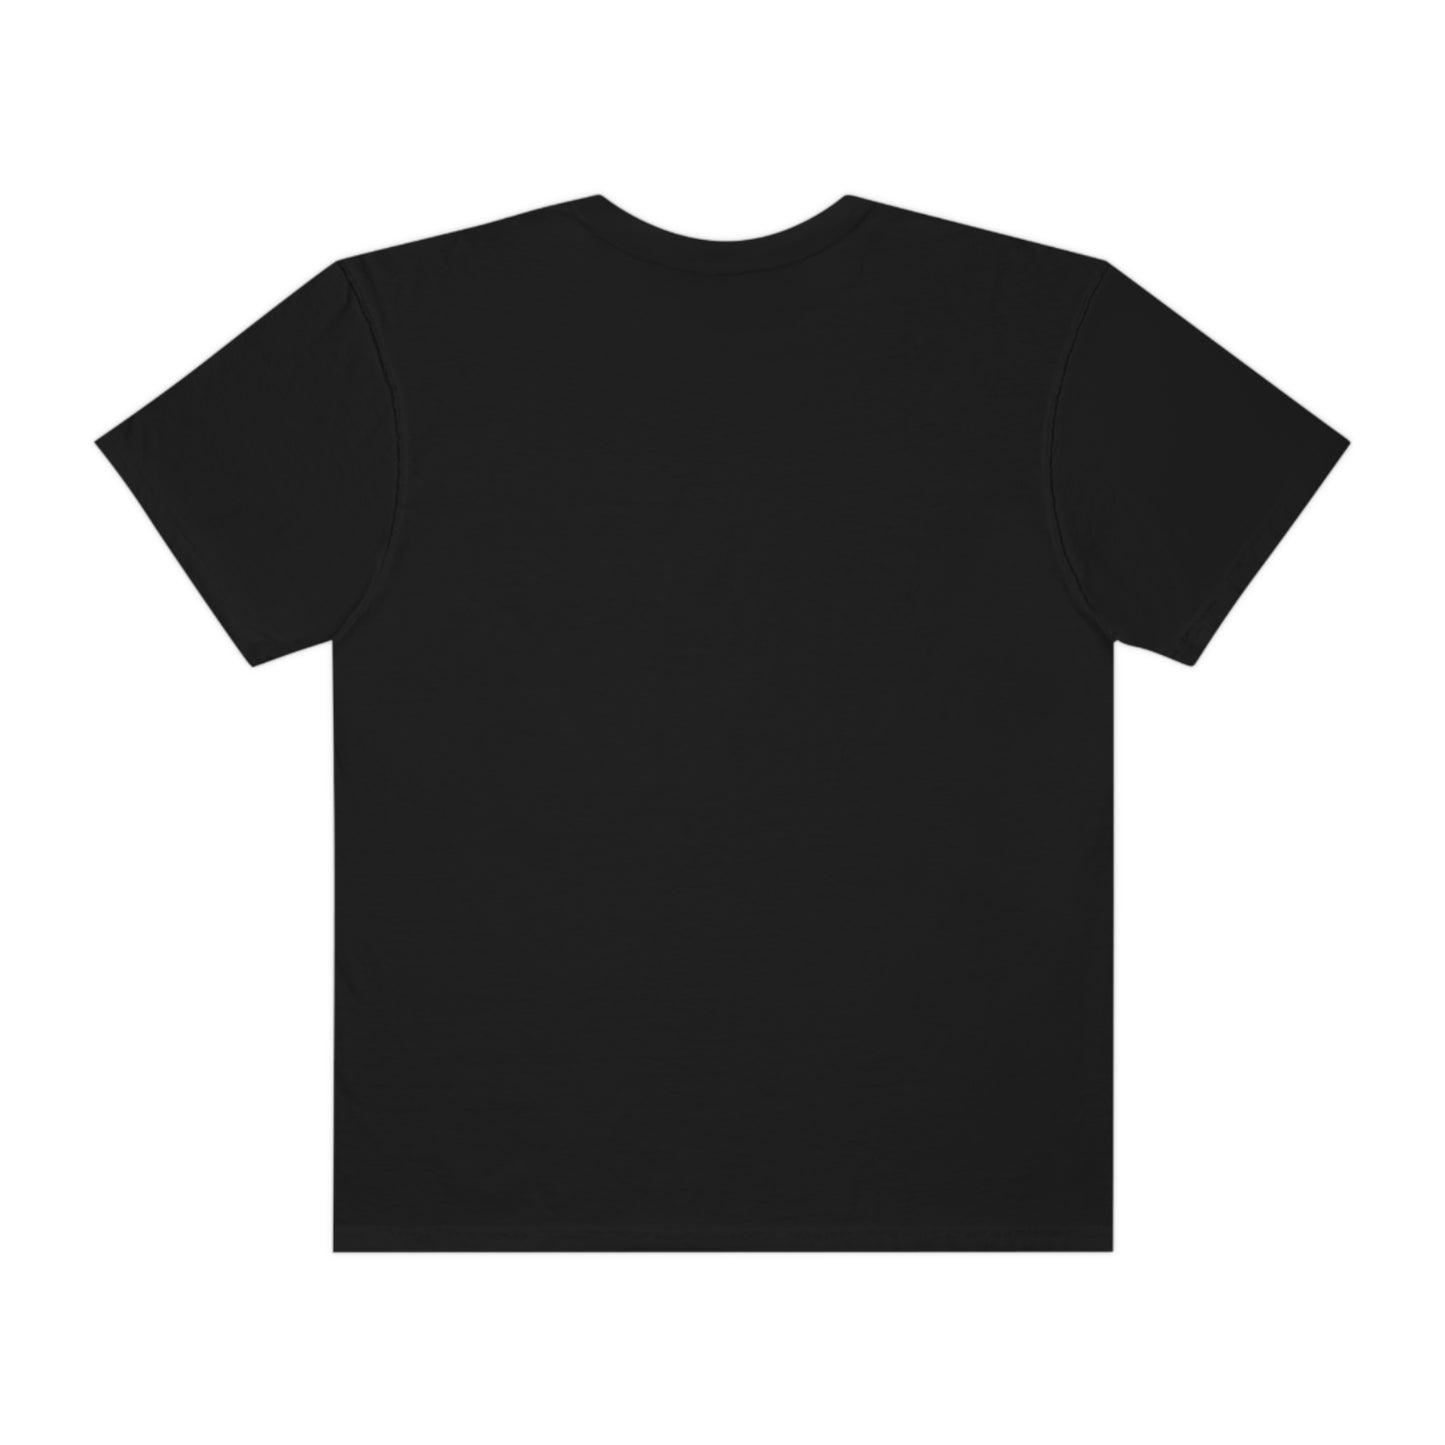 ELITE SOCCER | Unisex Garment-Dyed T-shirt